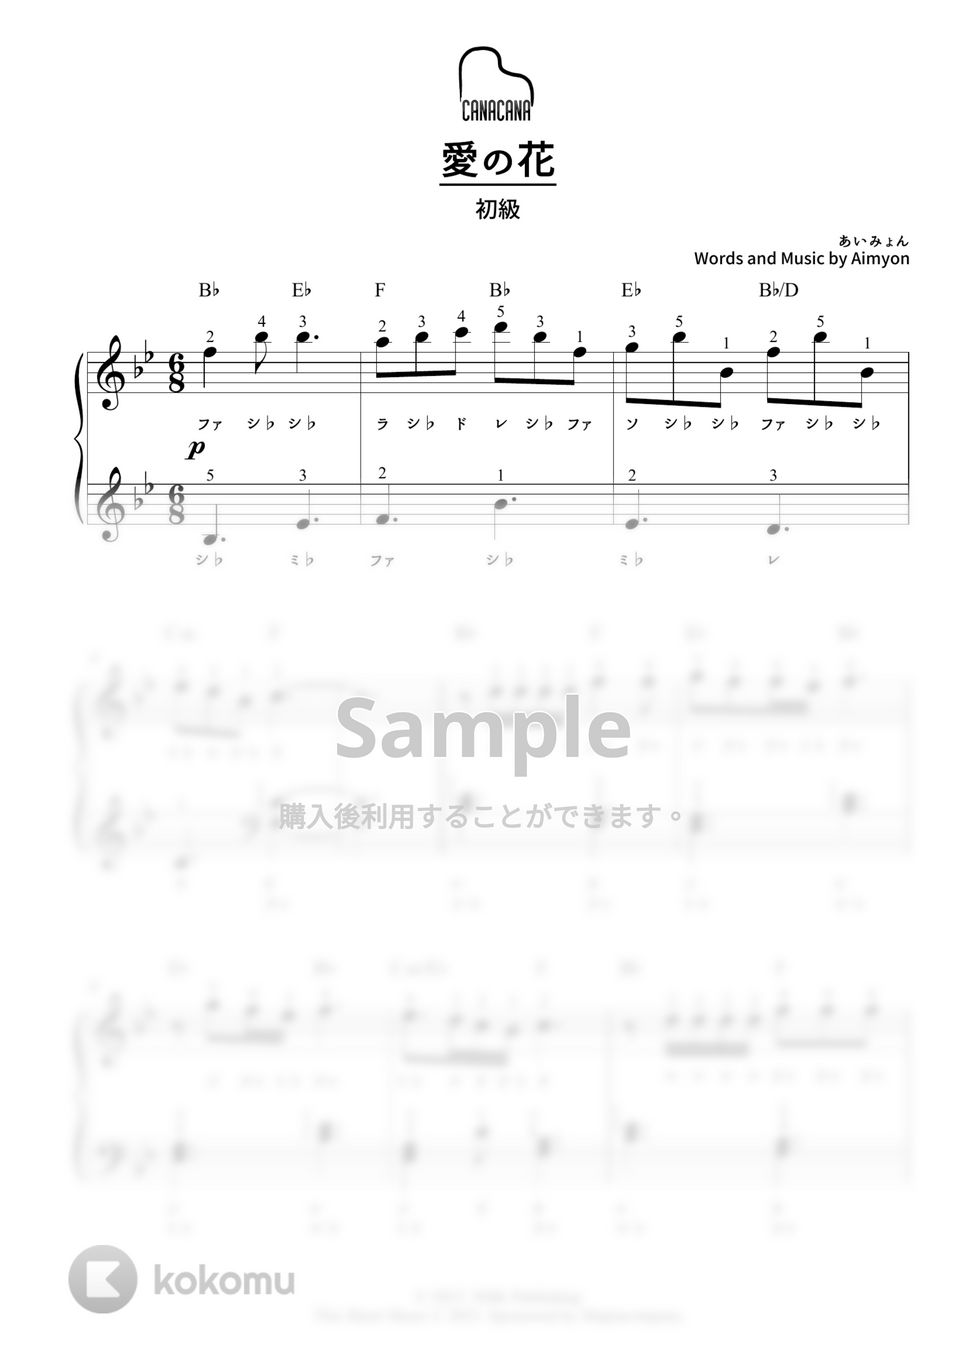 あいみょん - 愛の花 (初級/カタカナドレミ・指番号・コード付き) by CANACANA family